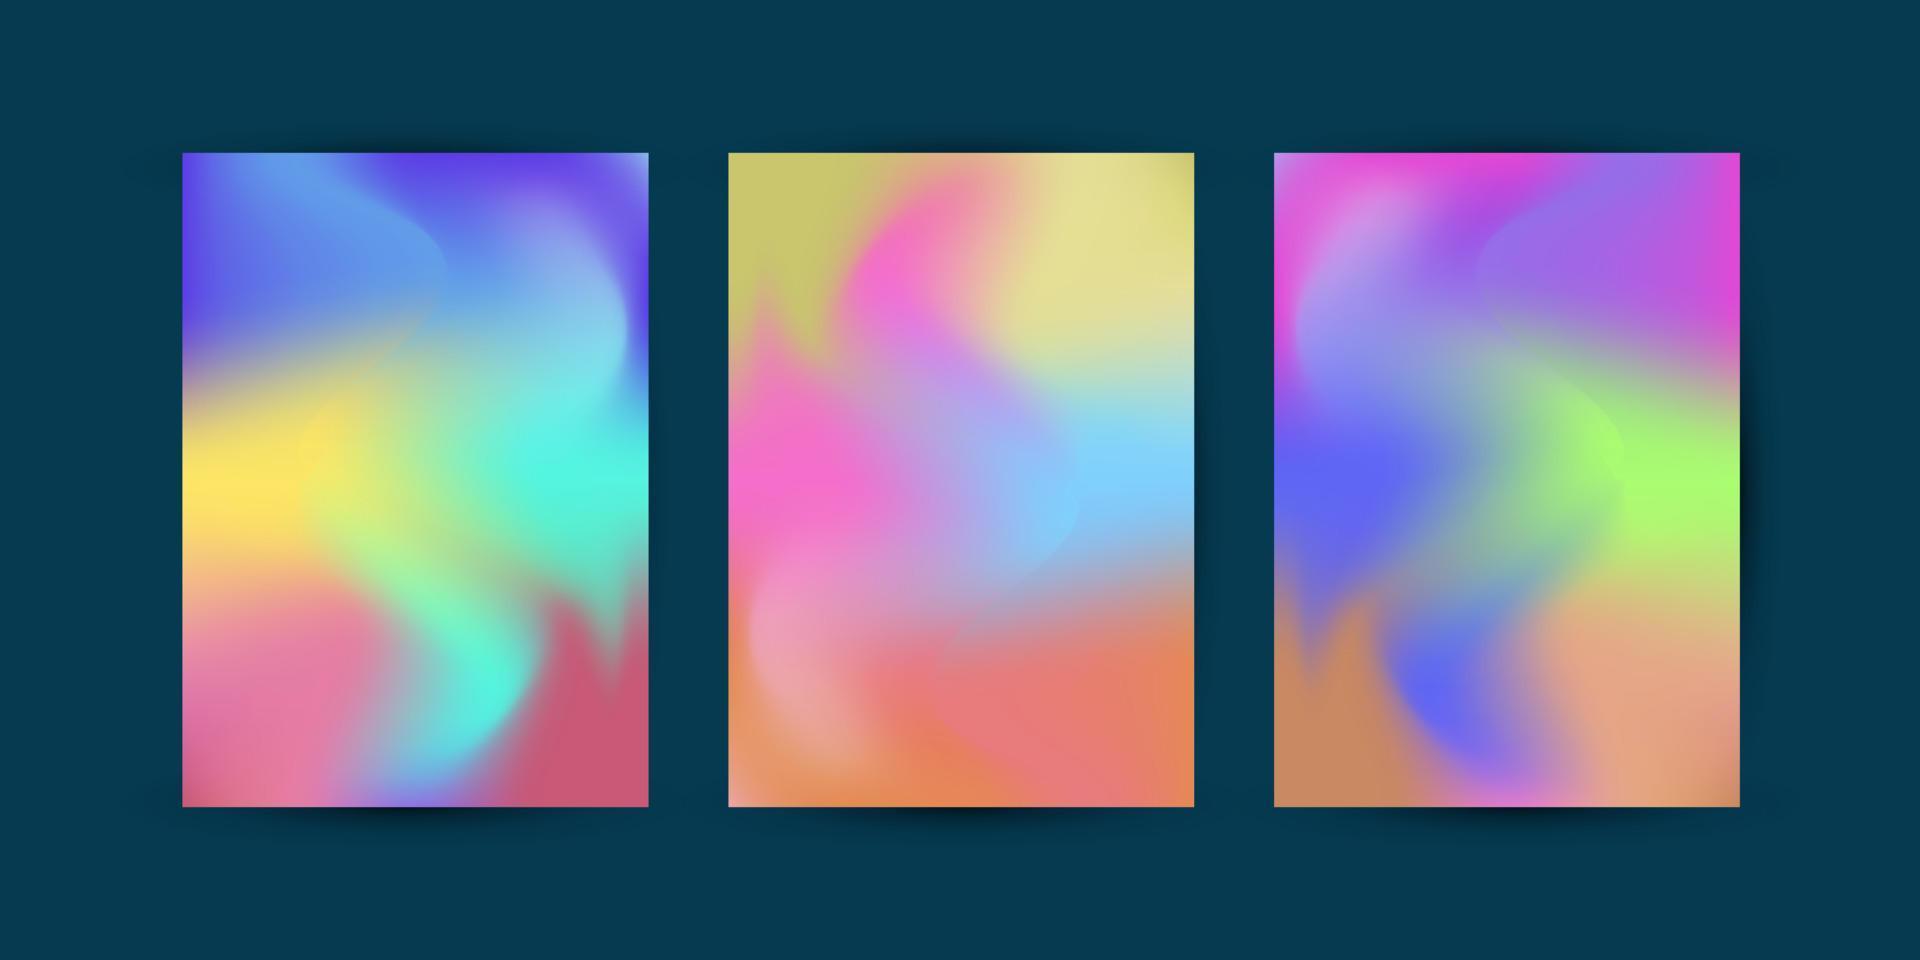 Reihe abstrakter Vektorhintergründe, gefüllt mit farbenfrohem Design in Lila, Orange, Gelb und Blau, hervorragende Farbkurven-Kombinationsvorlagen vektor